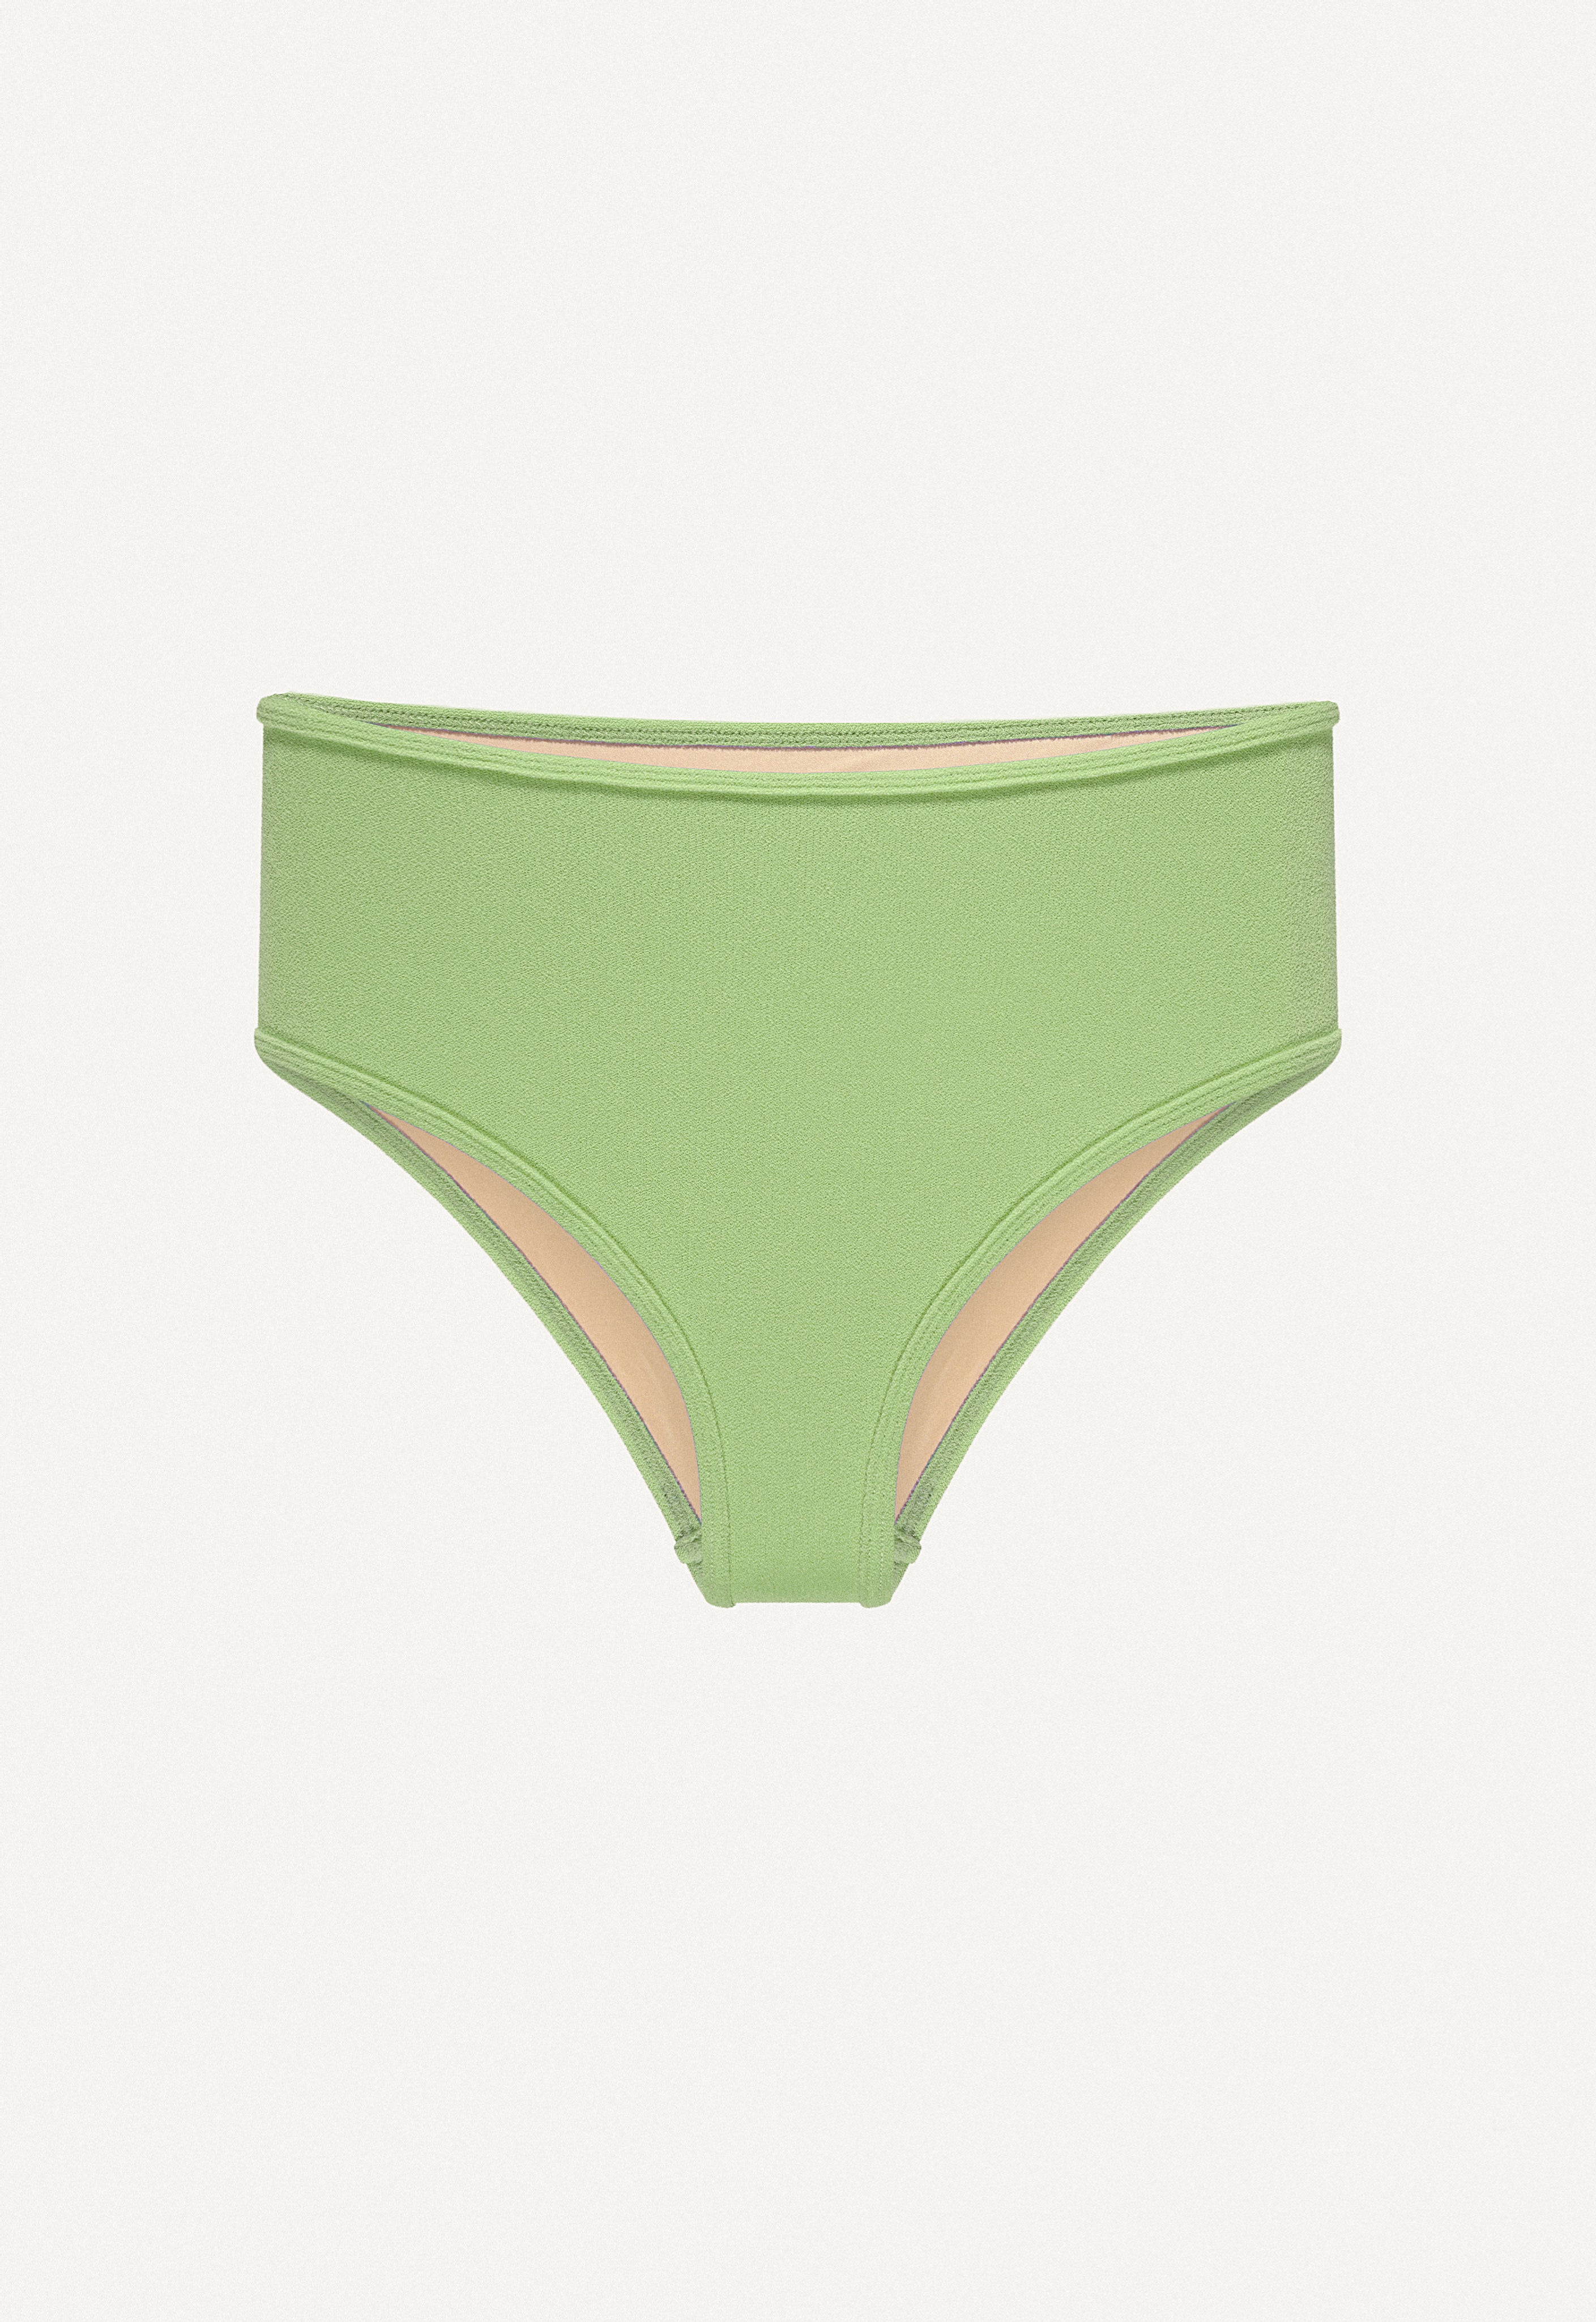 Bikini Bottom "Samun" in linden green terry